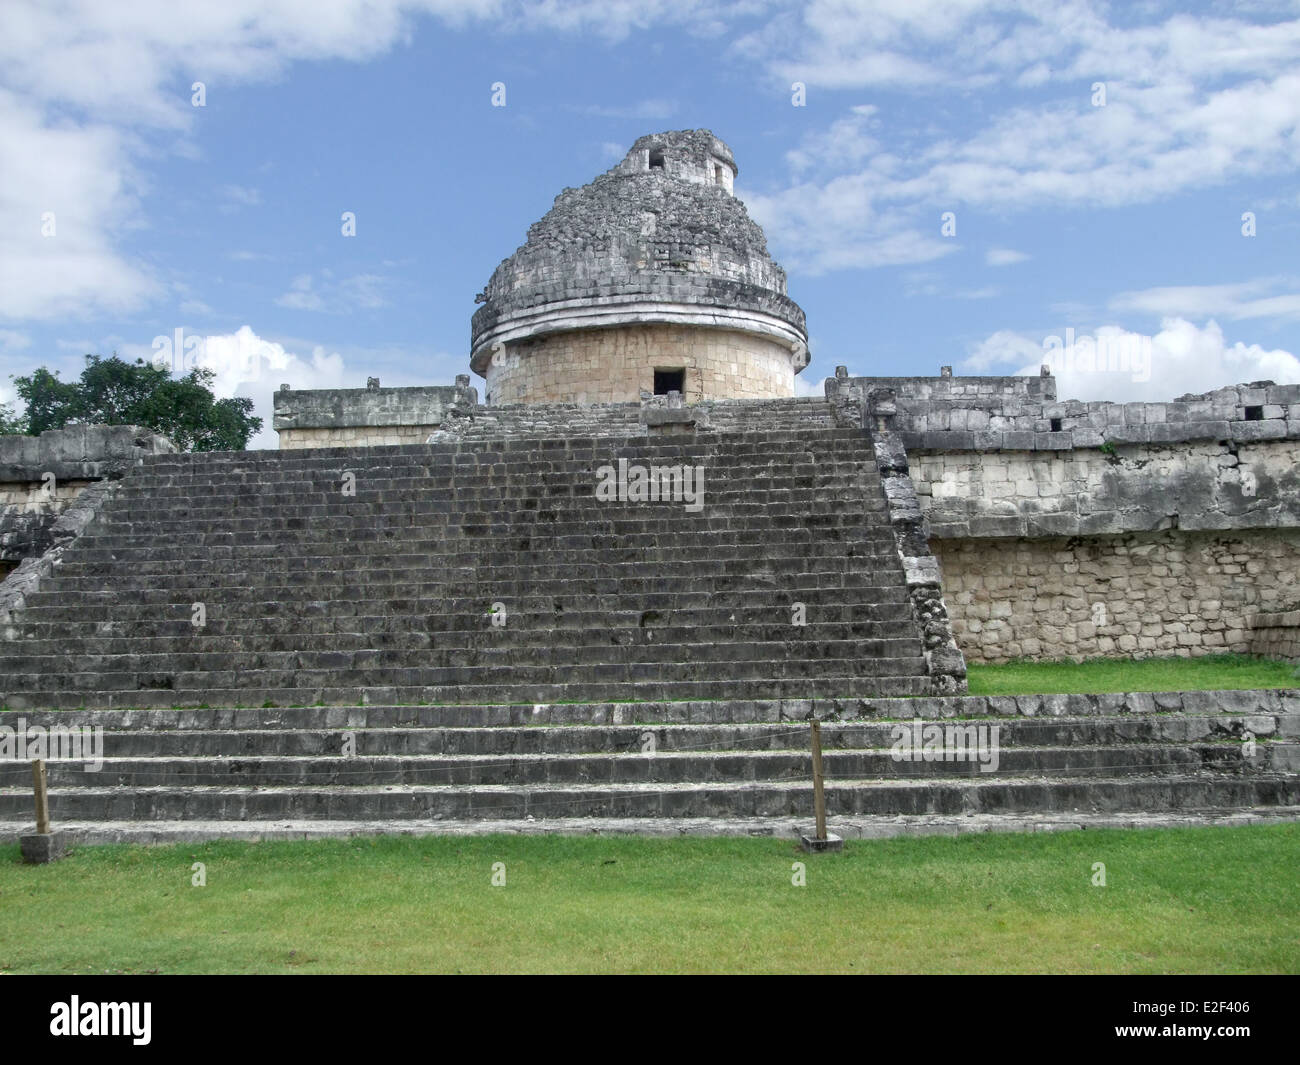 El Caracol templein Chichen Itza l'observatoire site archéologique dans la région de Yucatan, Mexique Banque D'Images